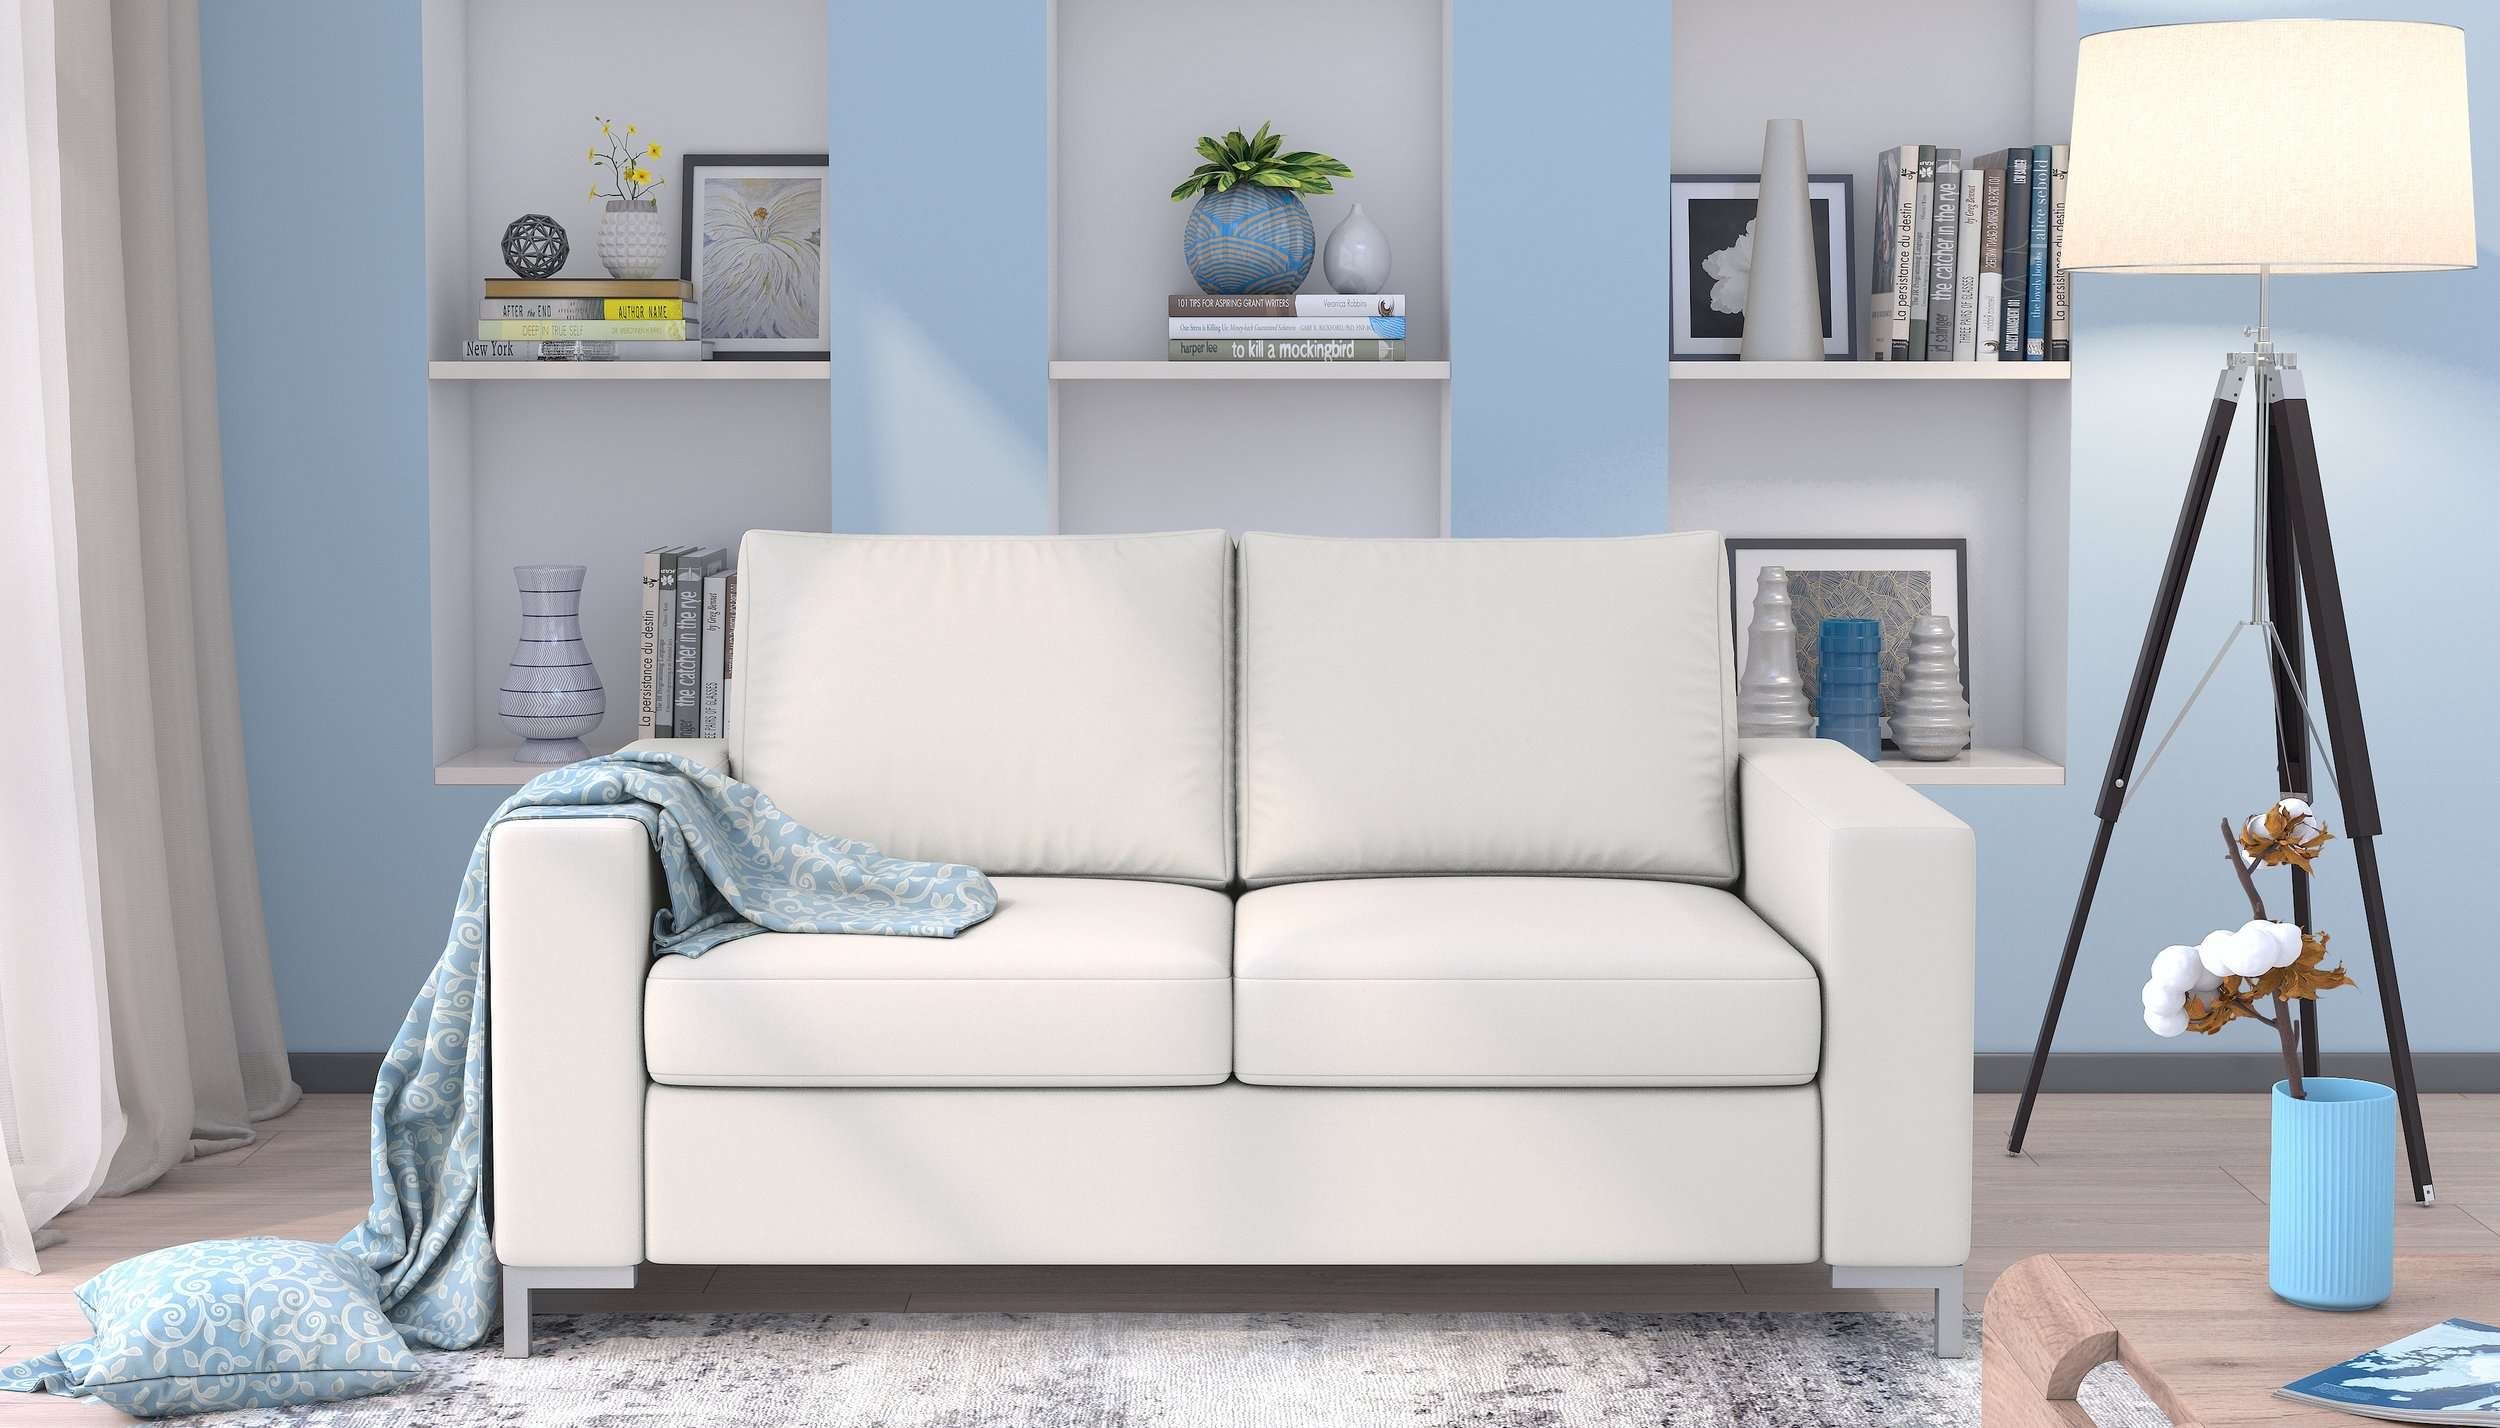 Erling, im mit in frei Design, Sofa, Rückenlehne, Raum 3-Sitzer und 2-Sitzer, Modern Europa Sitzkomfort, Armlehnen stellbar, made Stylefy